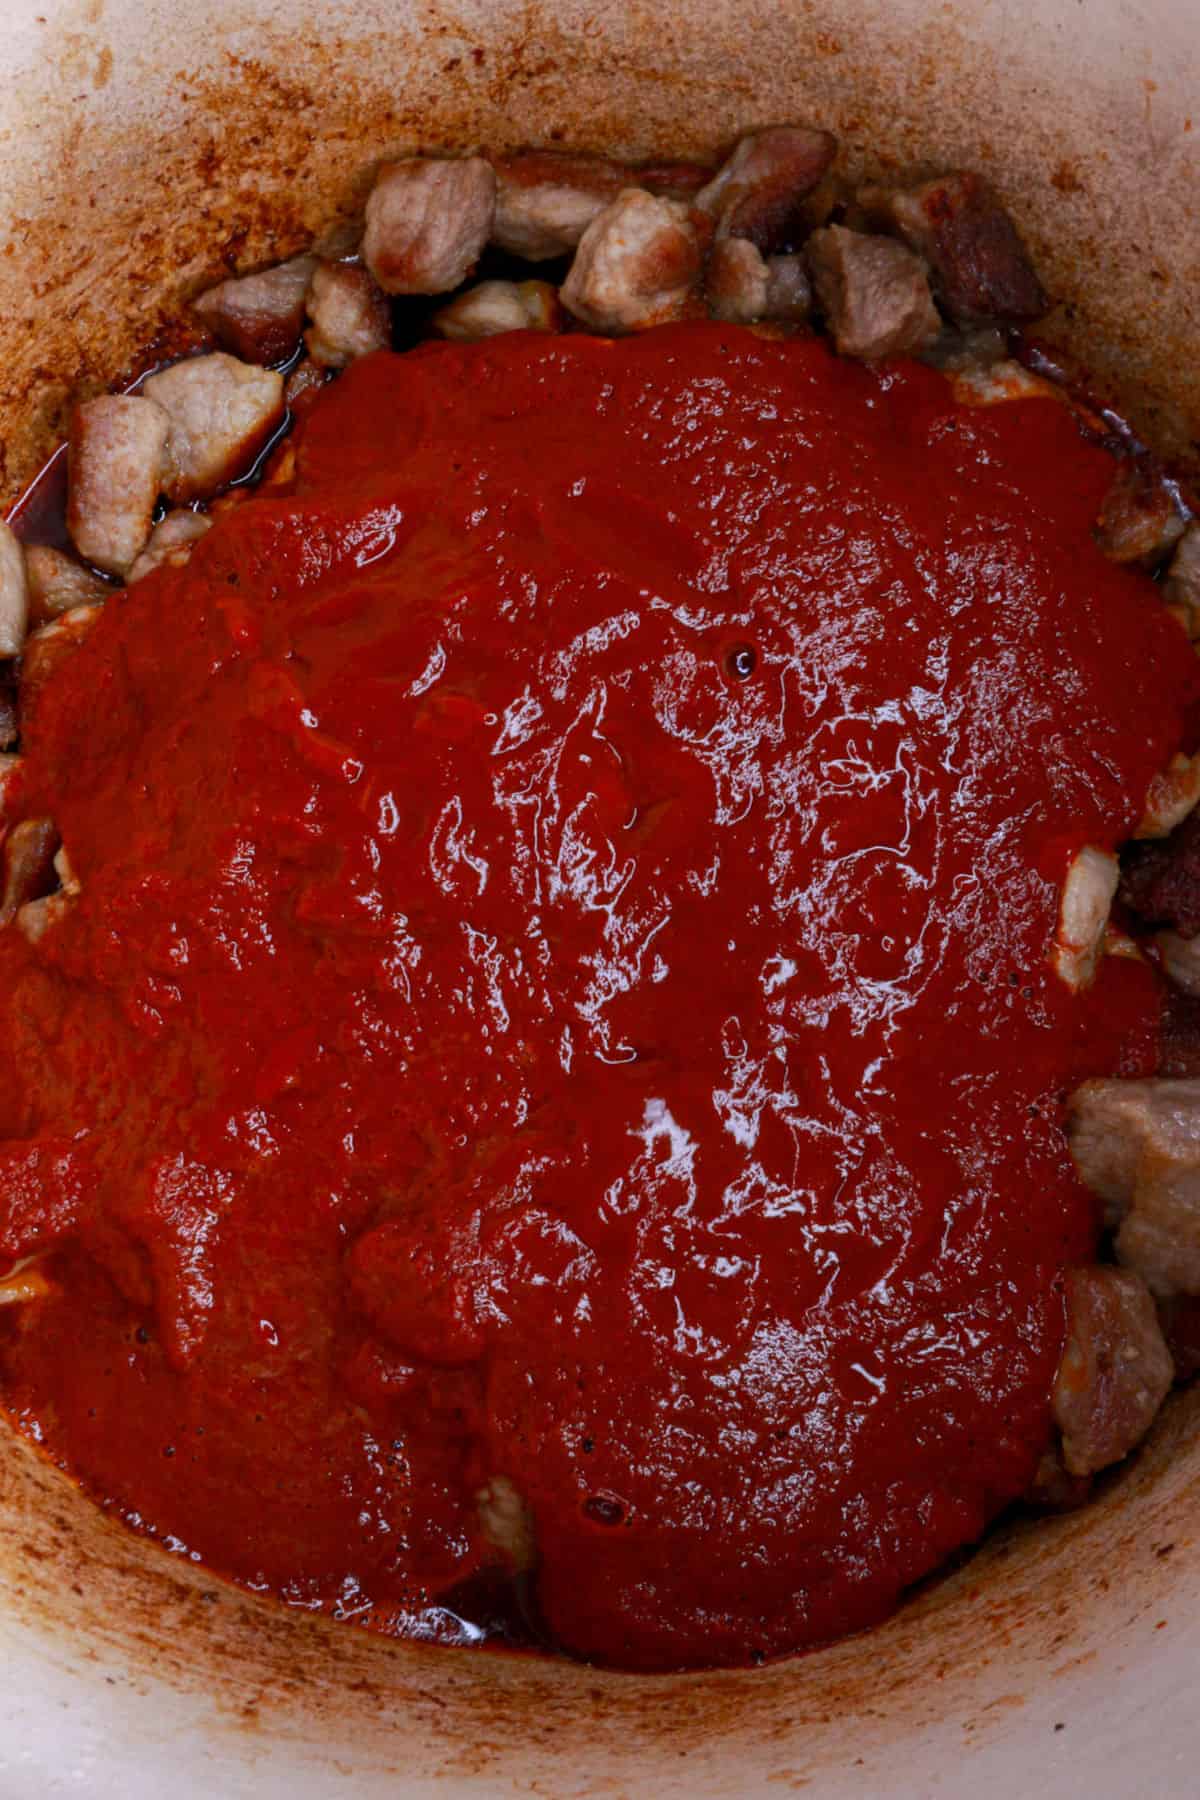 Asado de puerco sauce poured over cooked pork